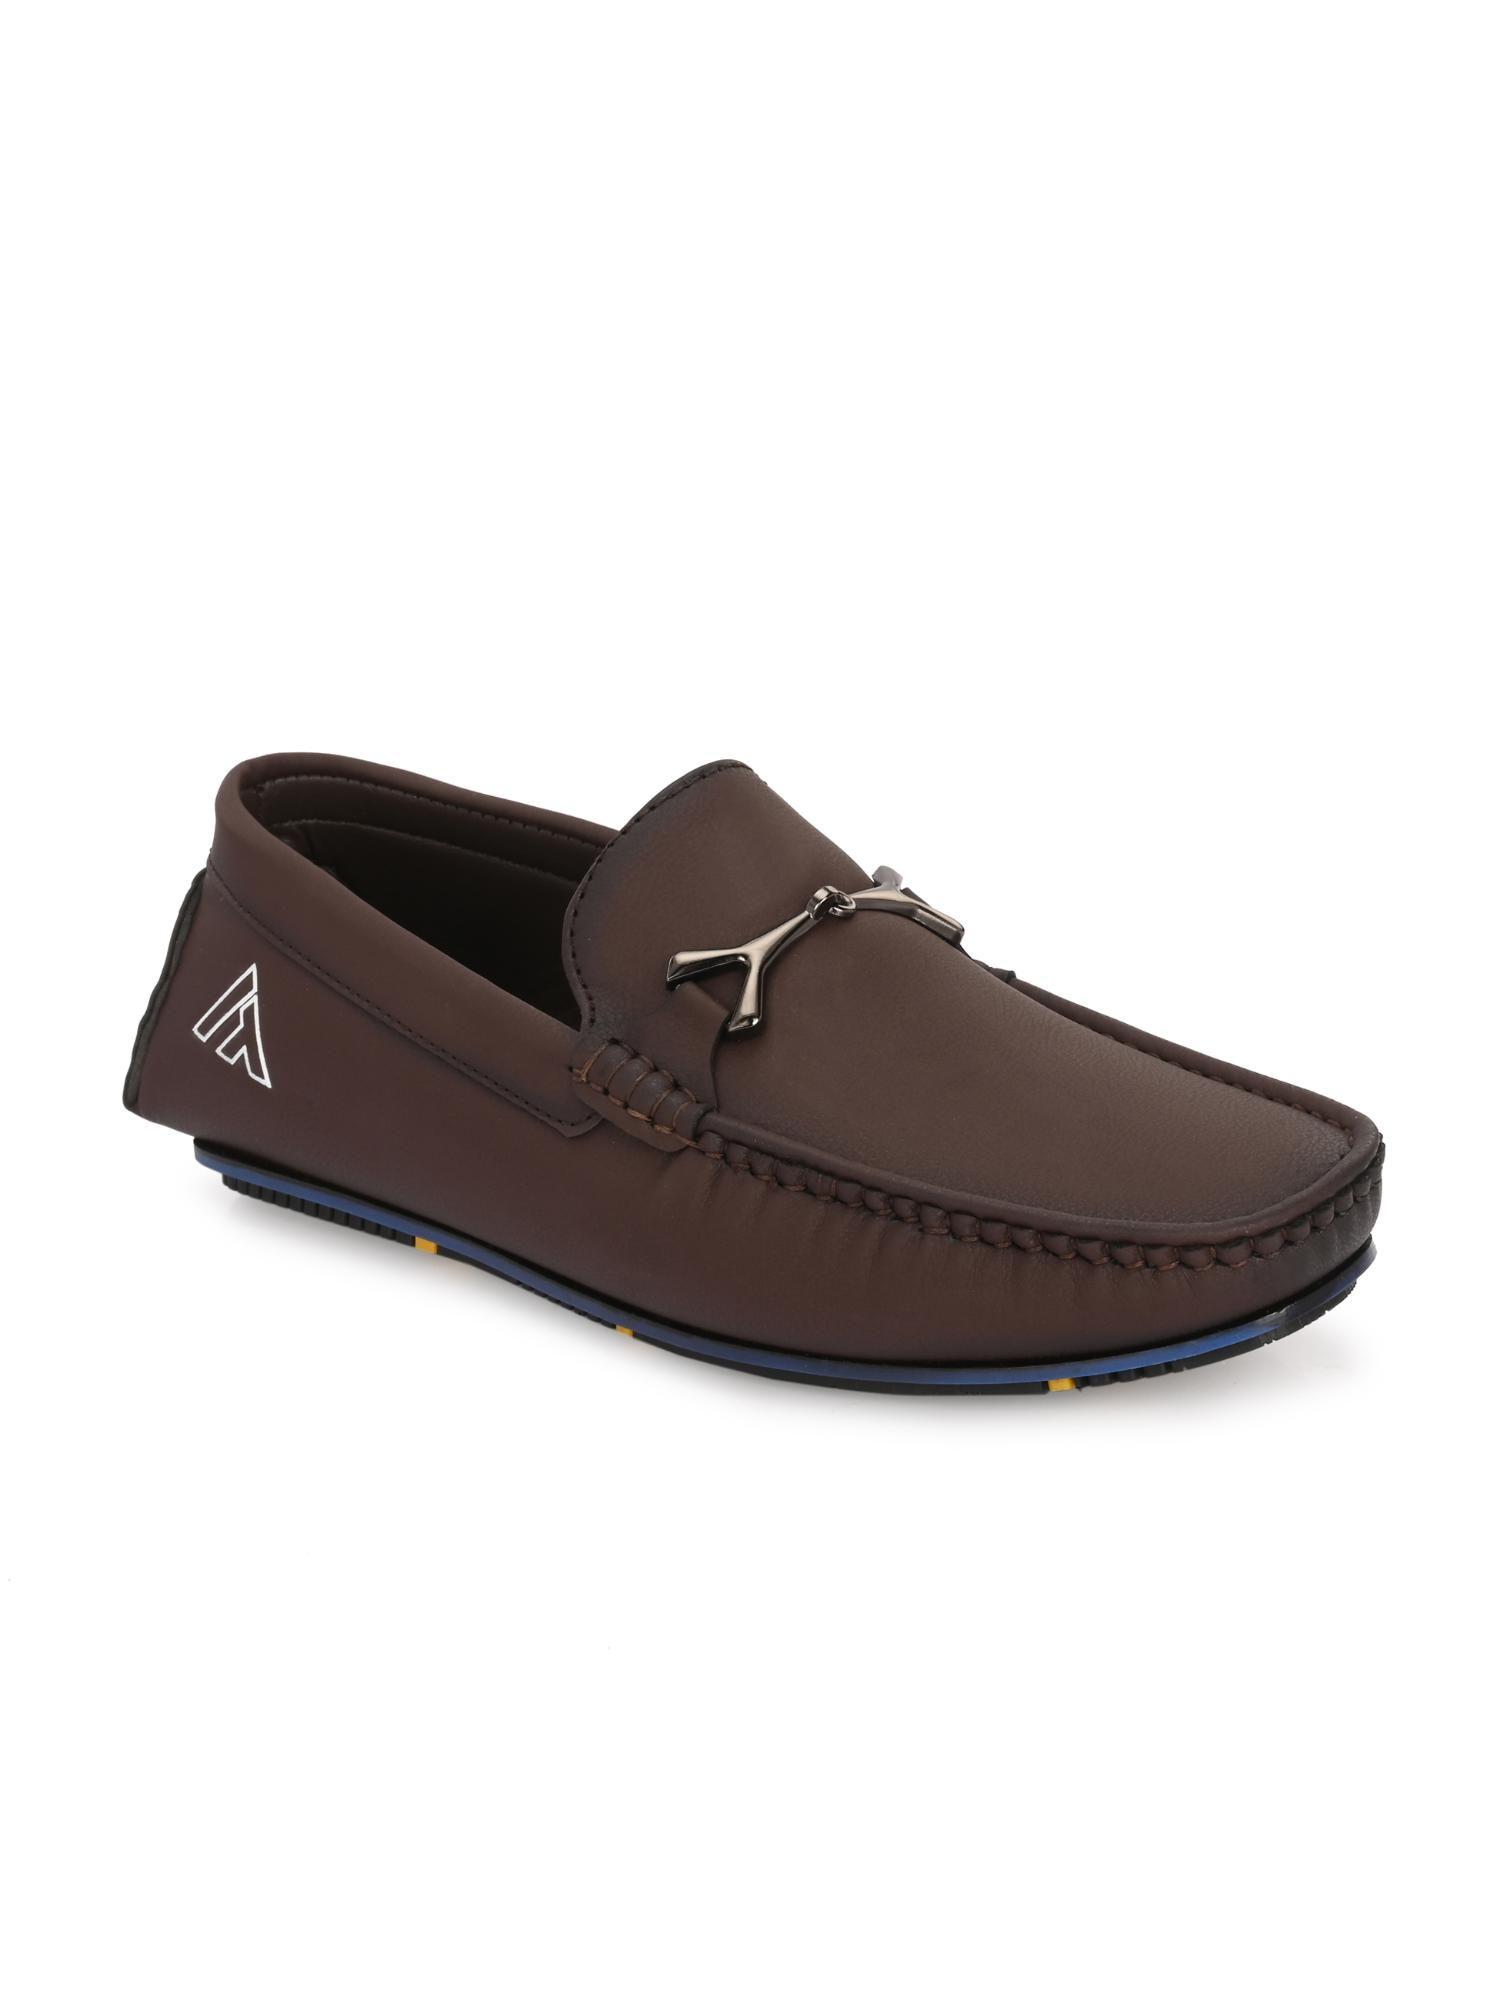 trendy-silicon-muti-coloured-anti-slip-714-vibrant-brown-loafers